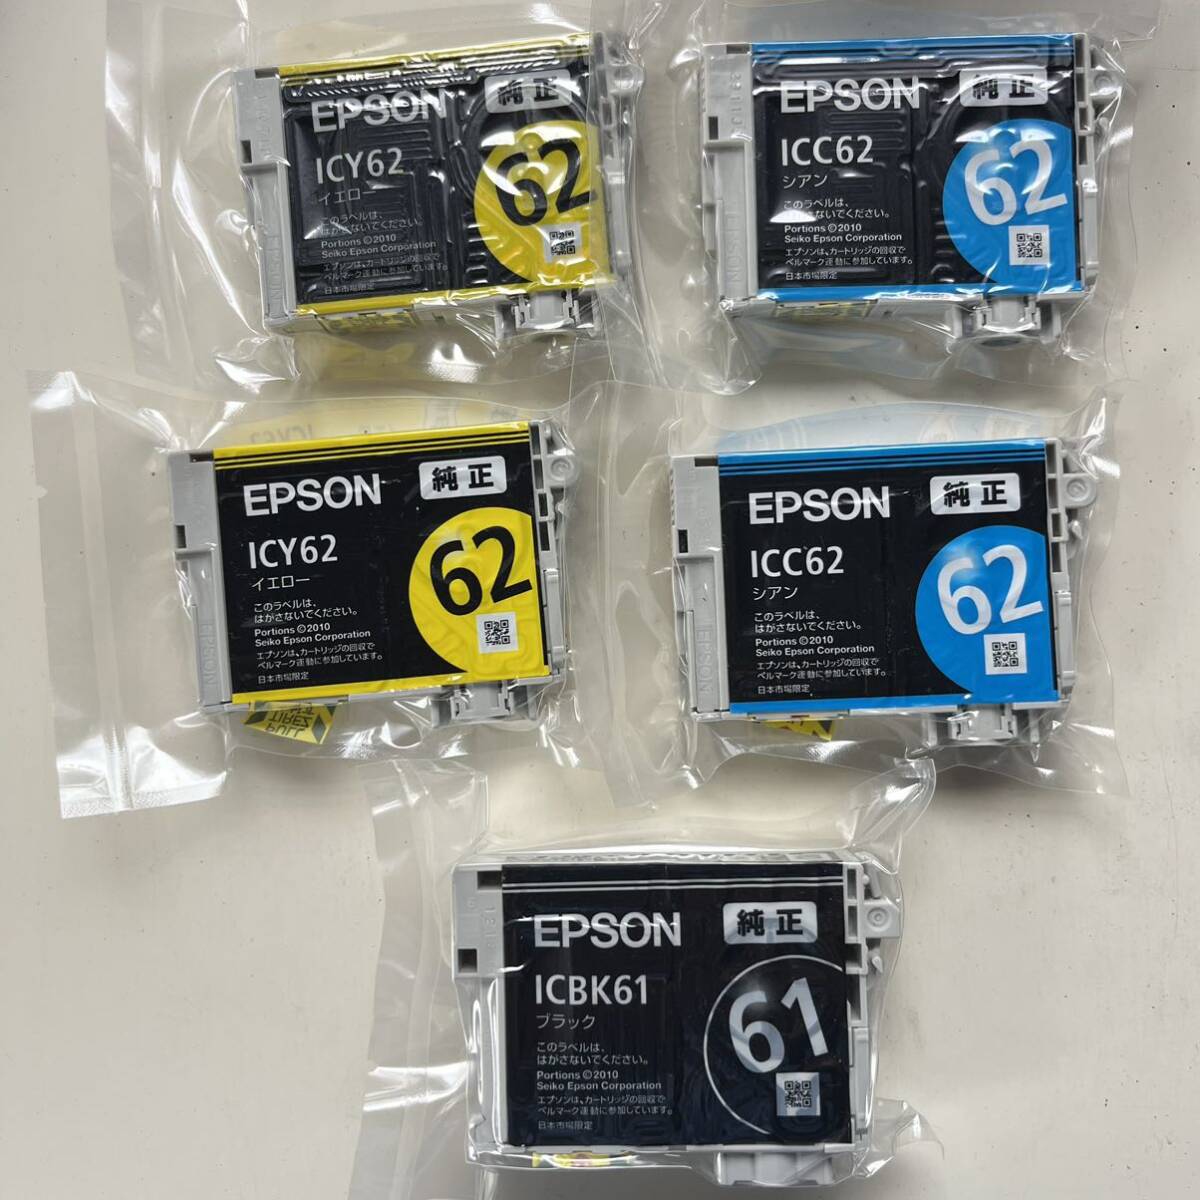 送料込 ★ 期限不明 EPSON エプソン 純正インクカートリッジ ICBK61、ICBY62×2、ICC62×2、計5個セット